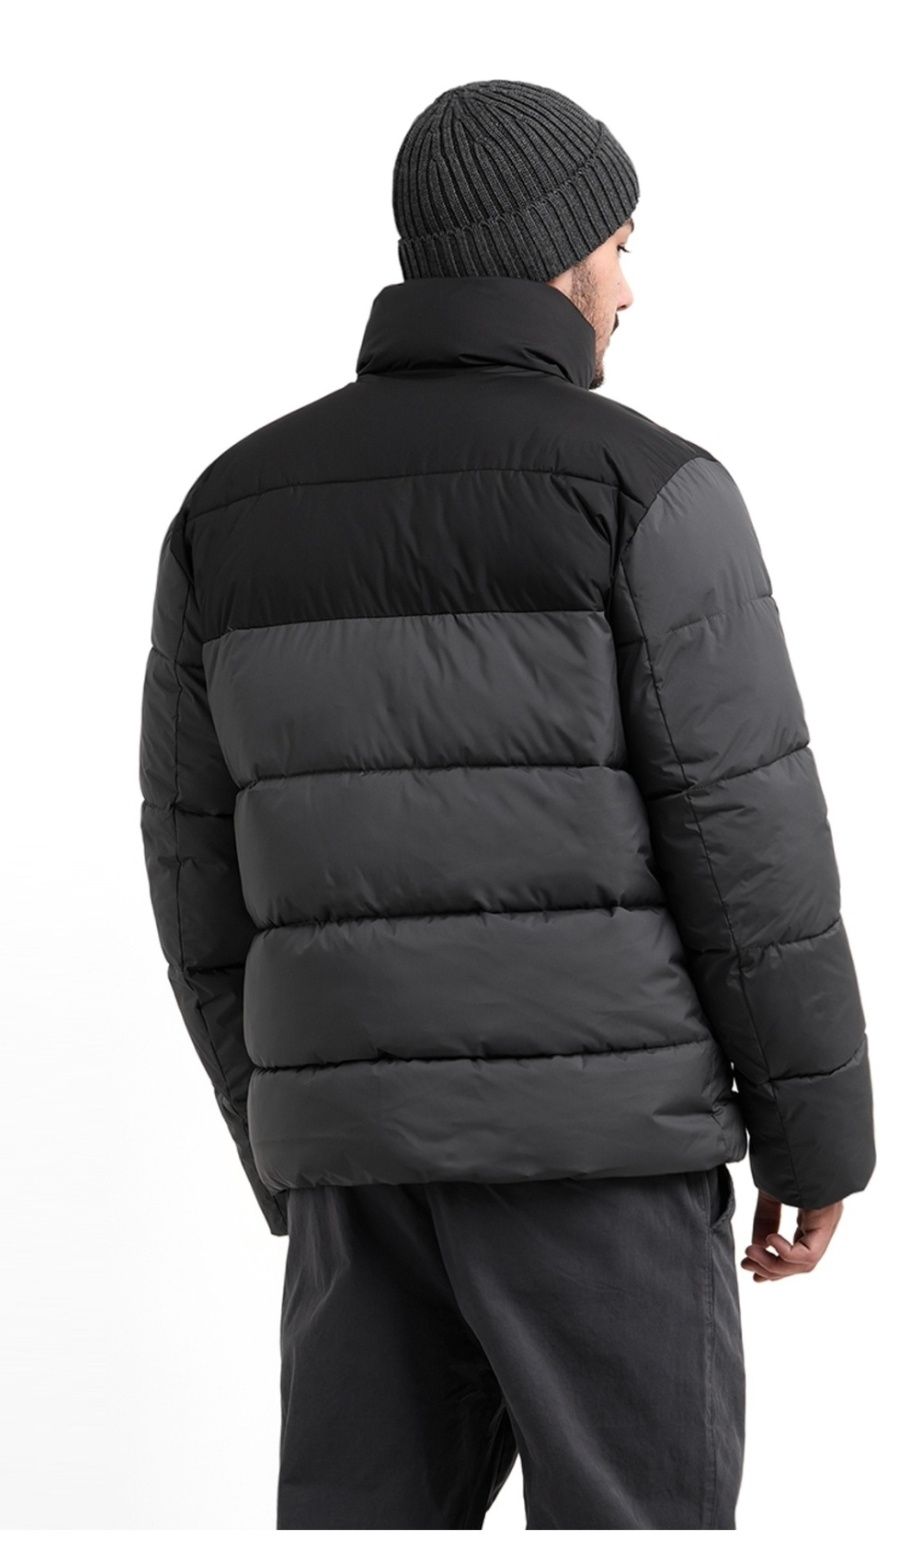 Срочно продам Зимний мужской куртка Minestone